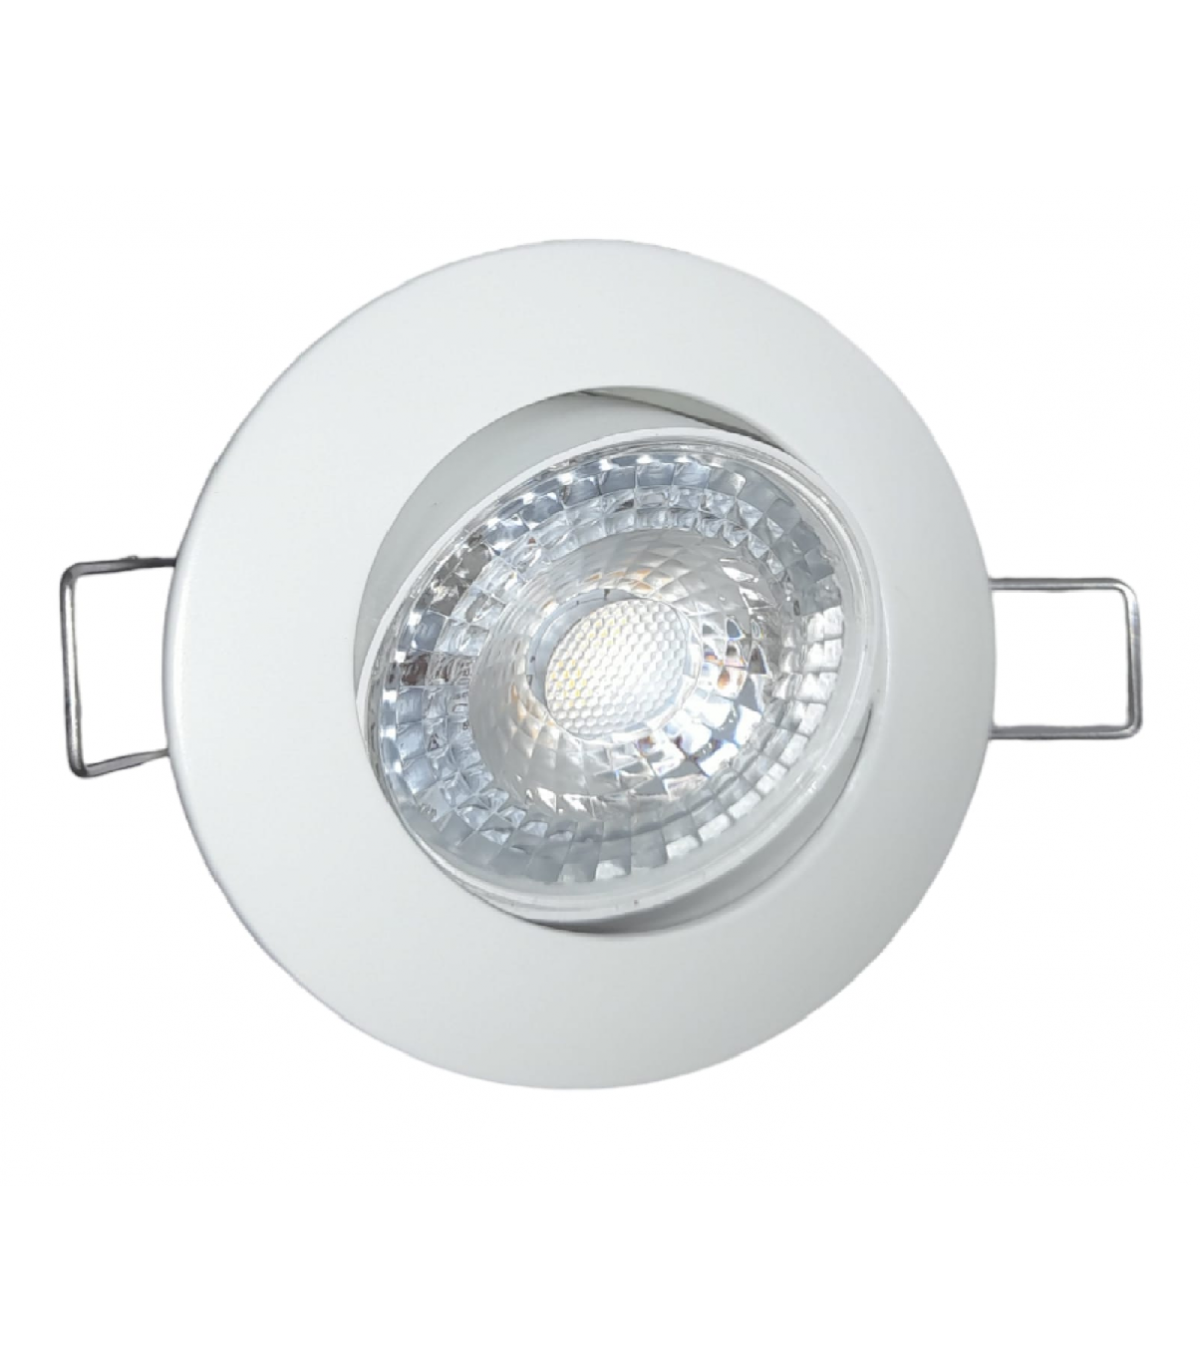 Spot LED orientable 7.5W 3000K blanc chaud 720lumens diamètre de